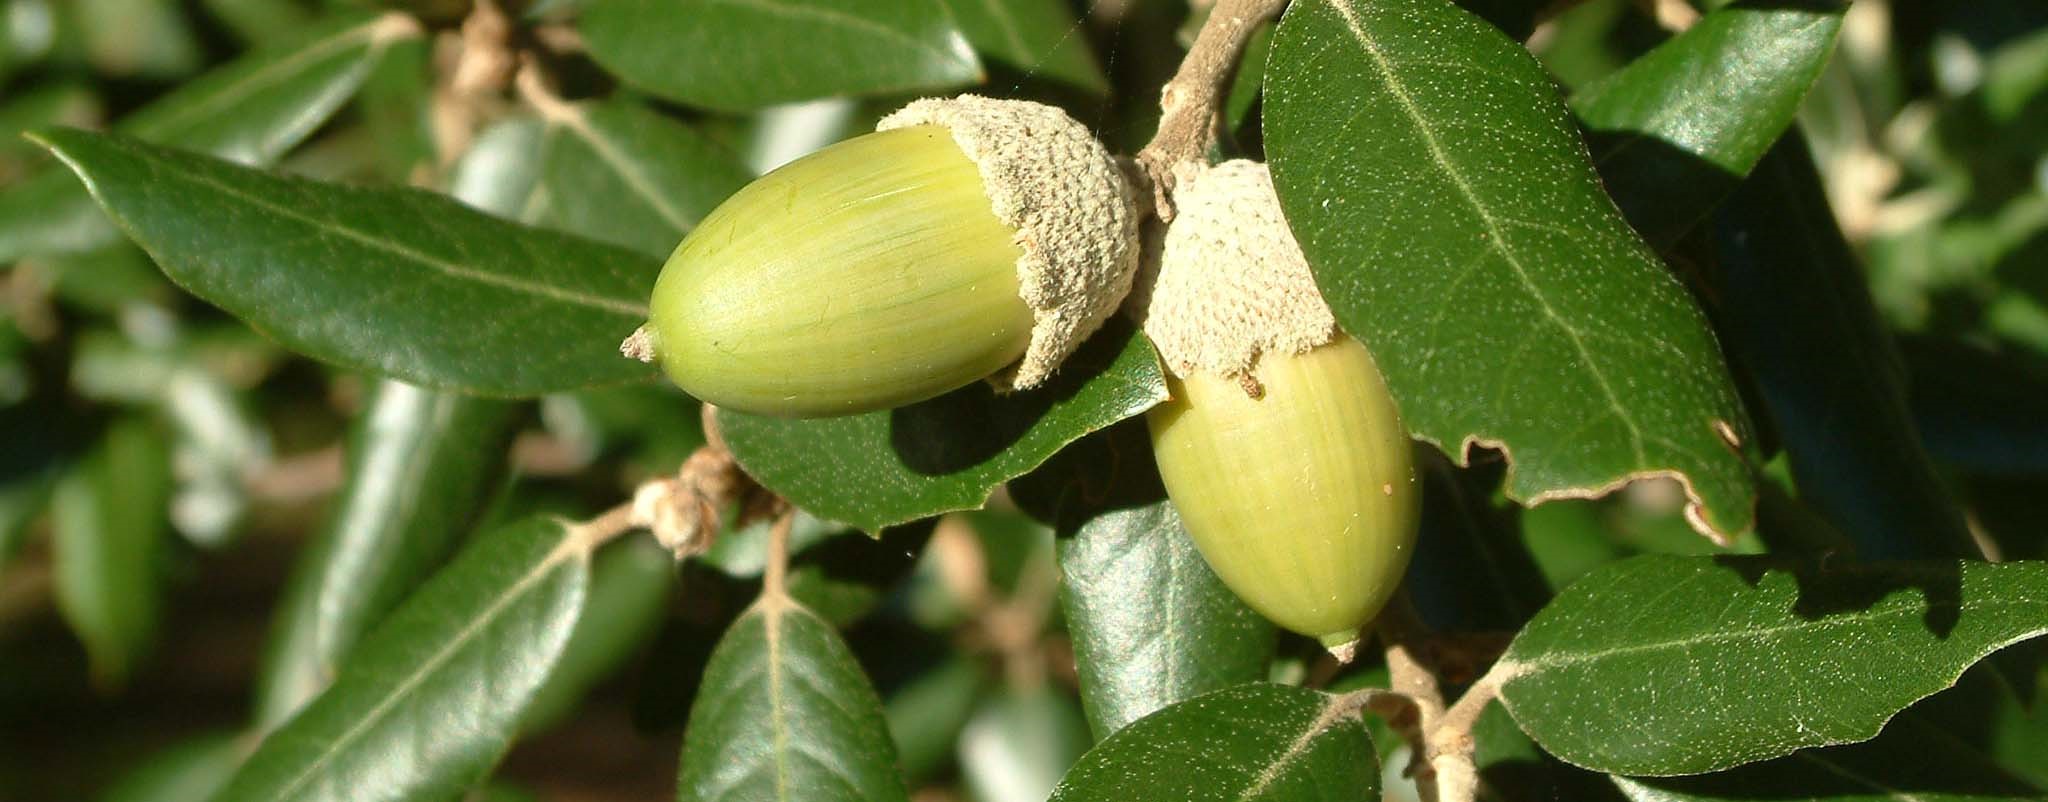 Holm oak (Quercus ilex) - acorns